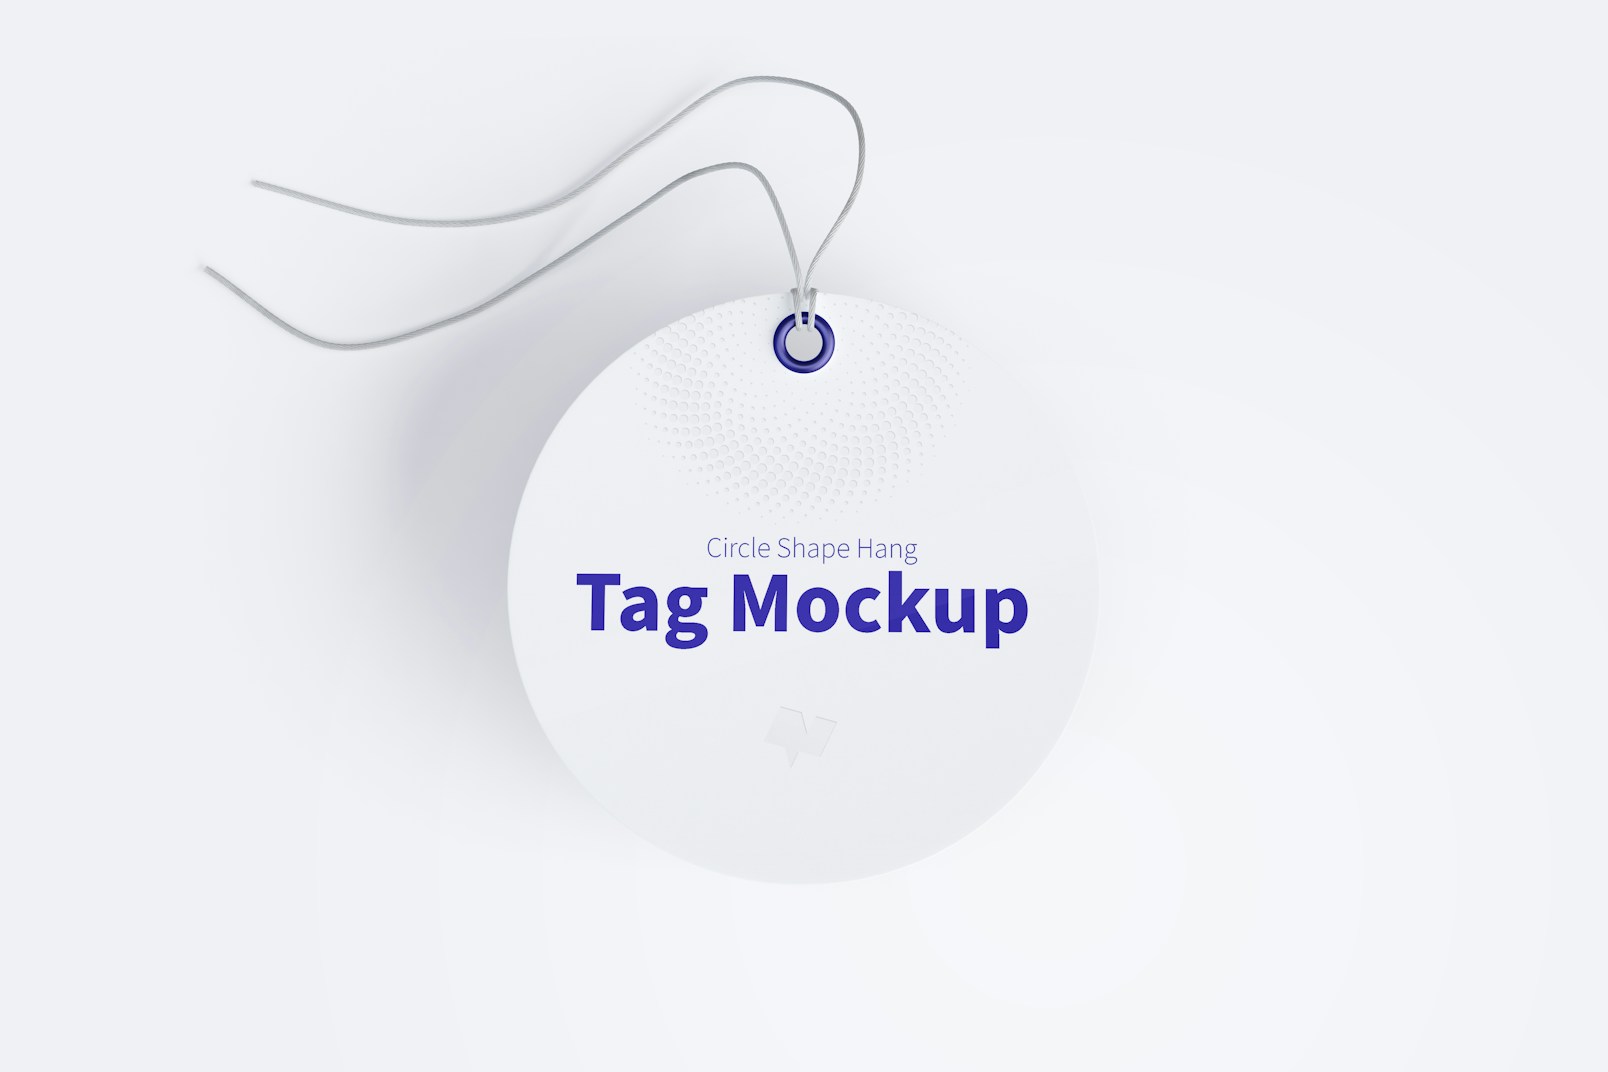 Circle Shape Hang Tag Mockup with String, Floating